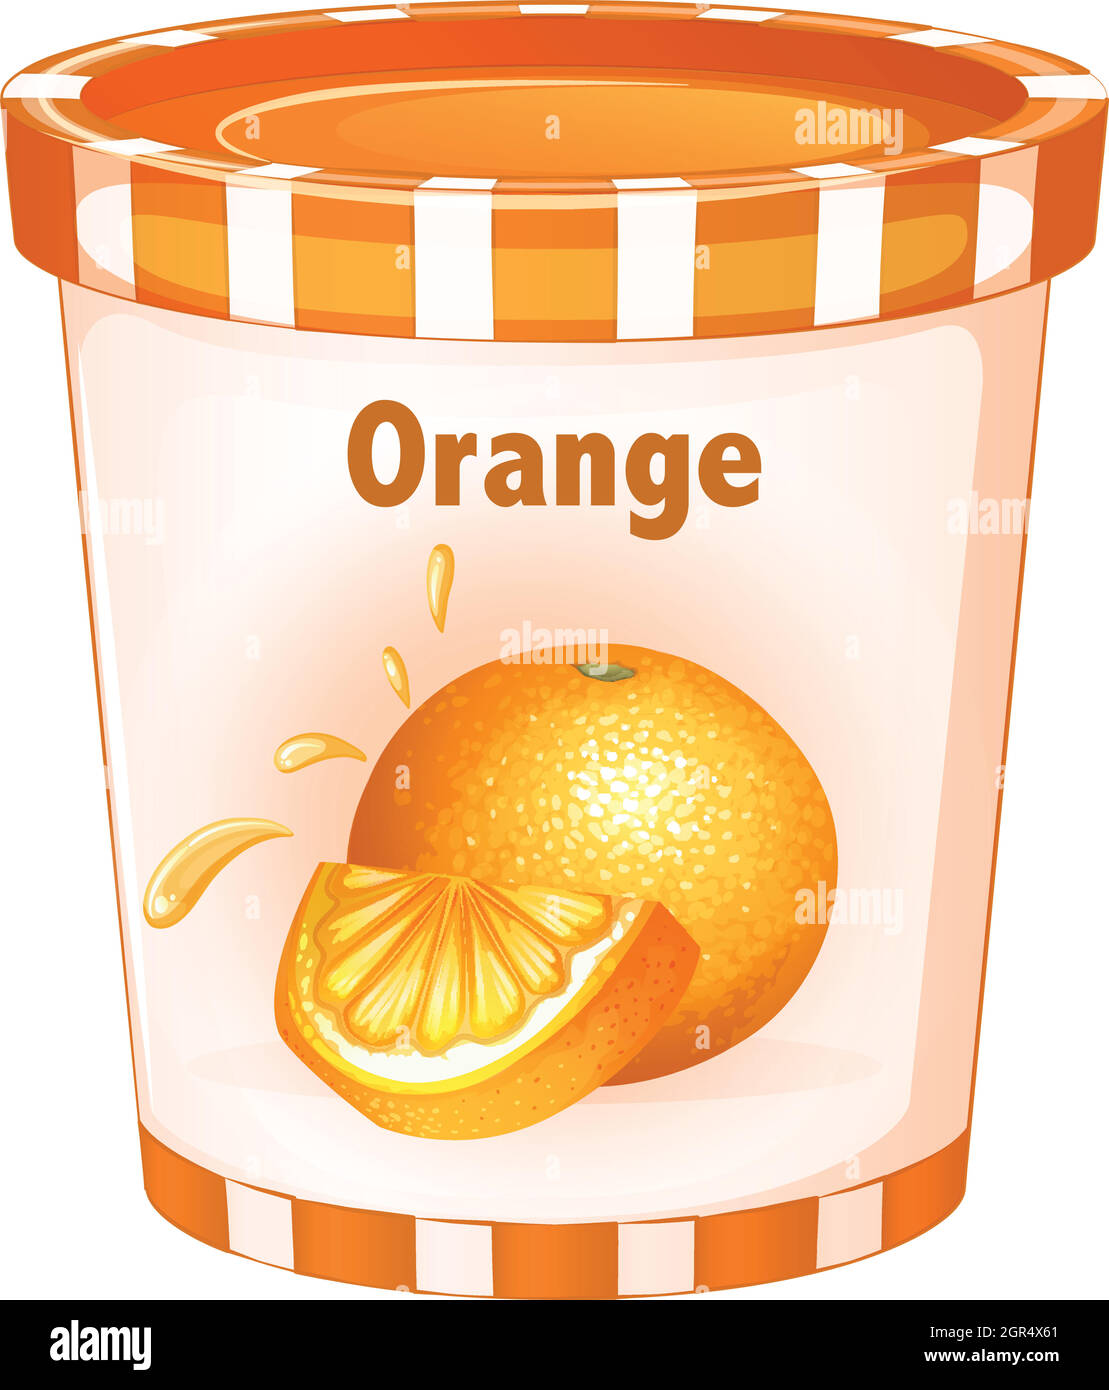 Orange yogurt in cup Stock Vector